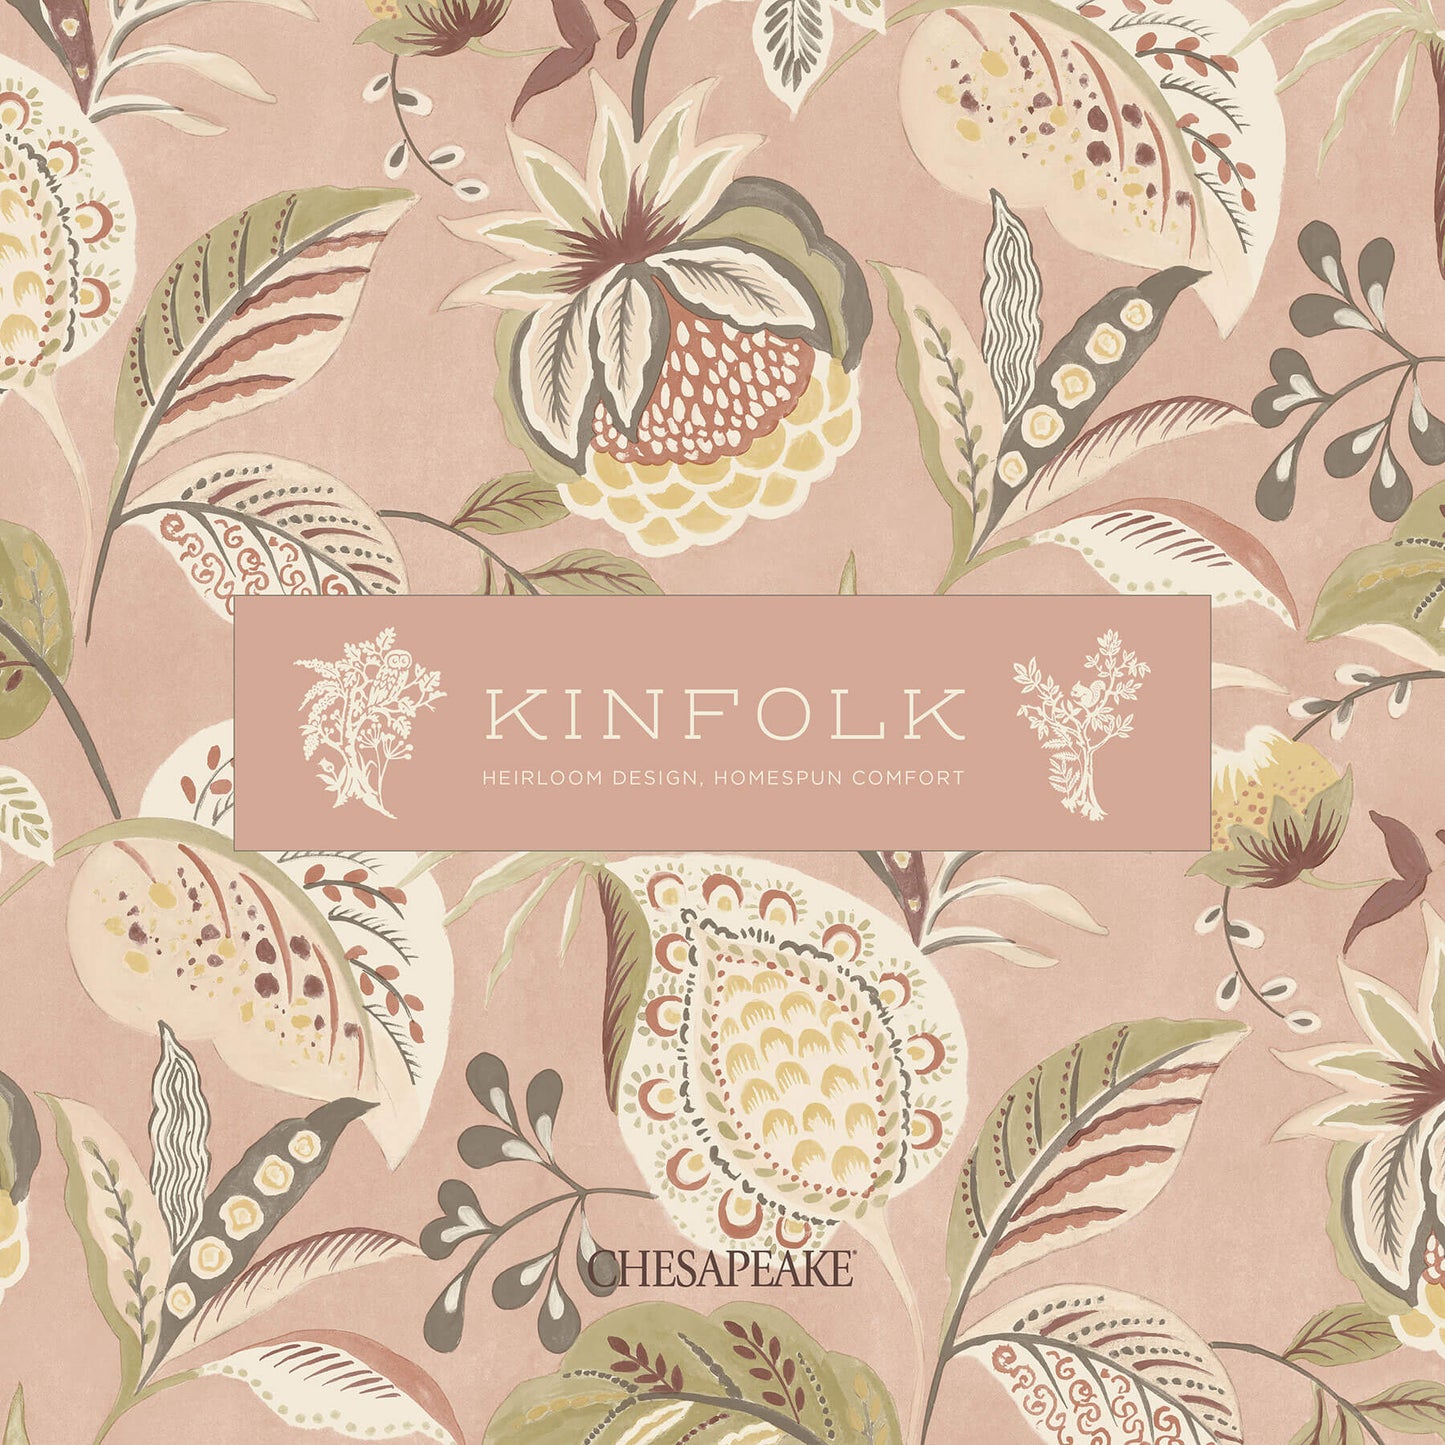 Chesapeake Kinfolk Zalipie Floral Trail Wallpaper - Lime